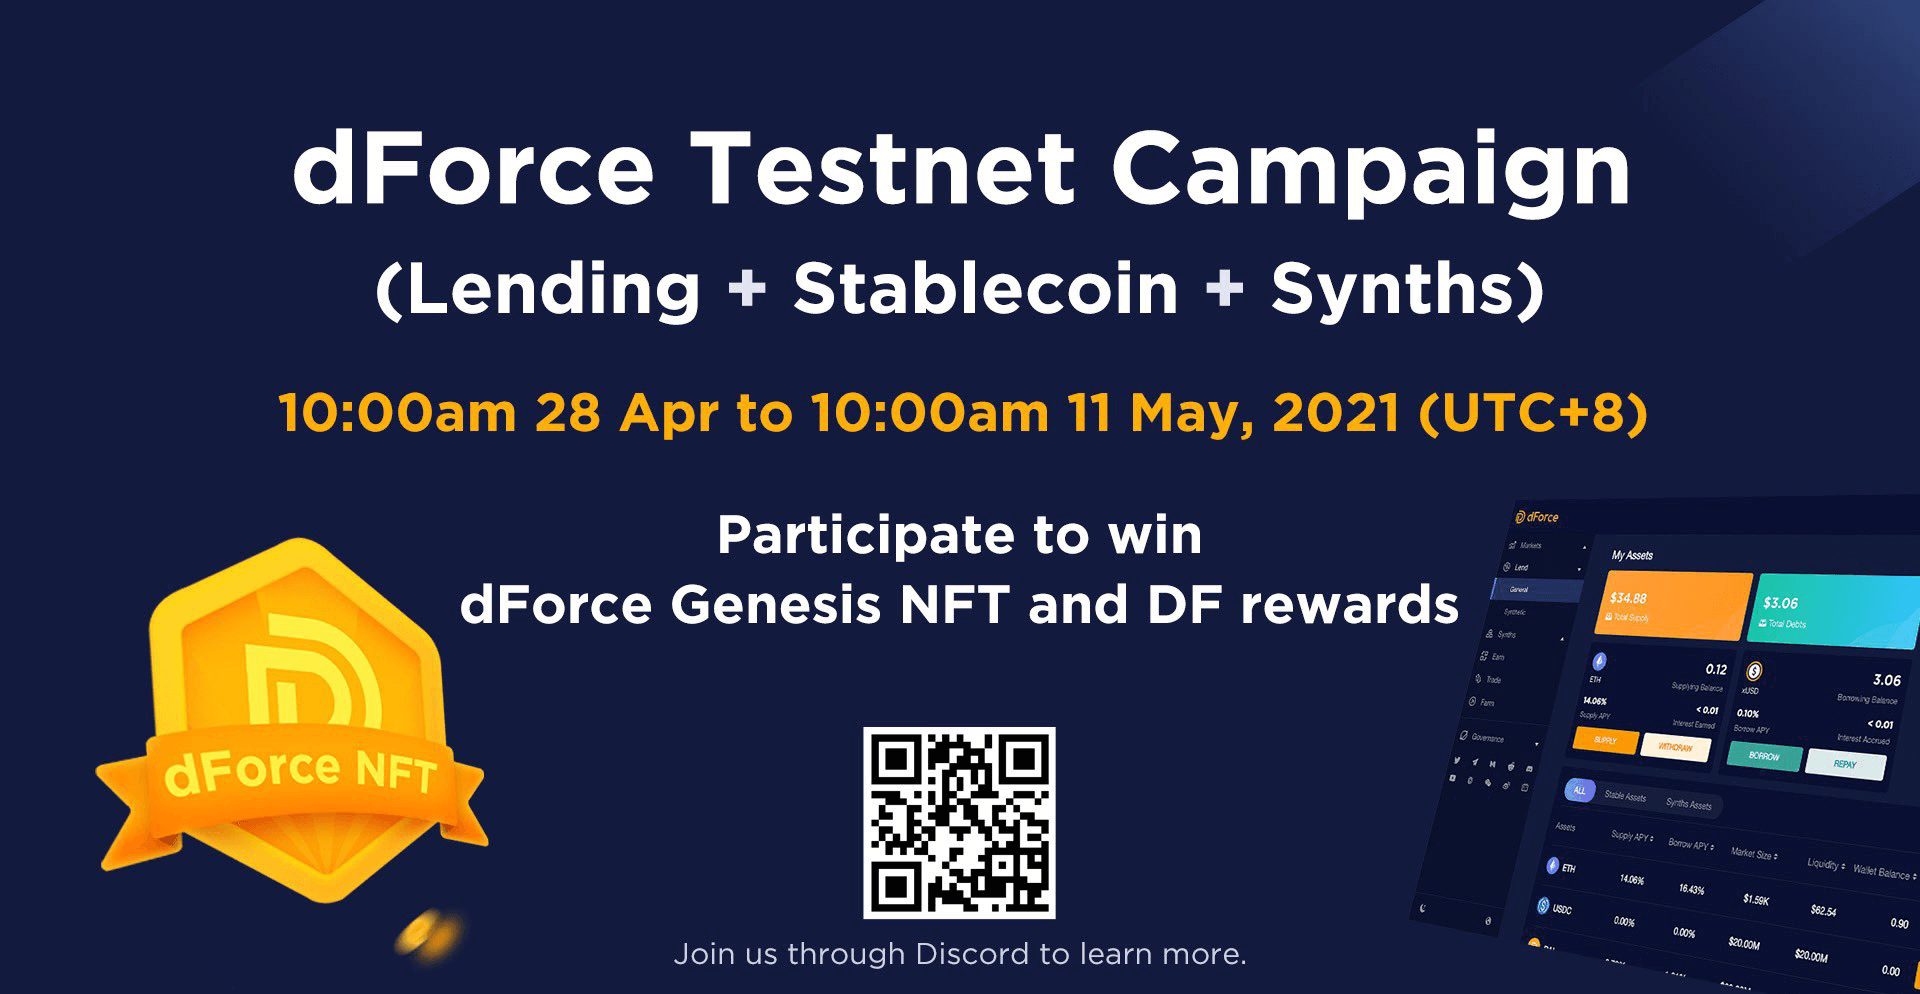 dForce Testnet Campaign